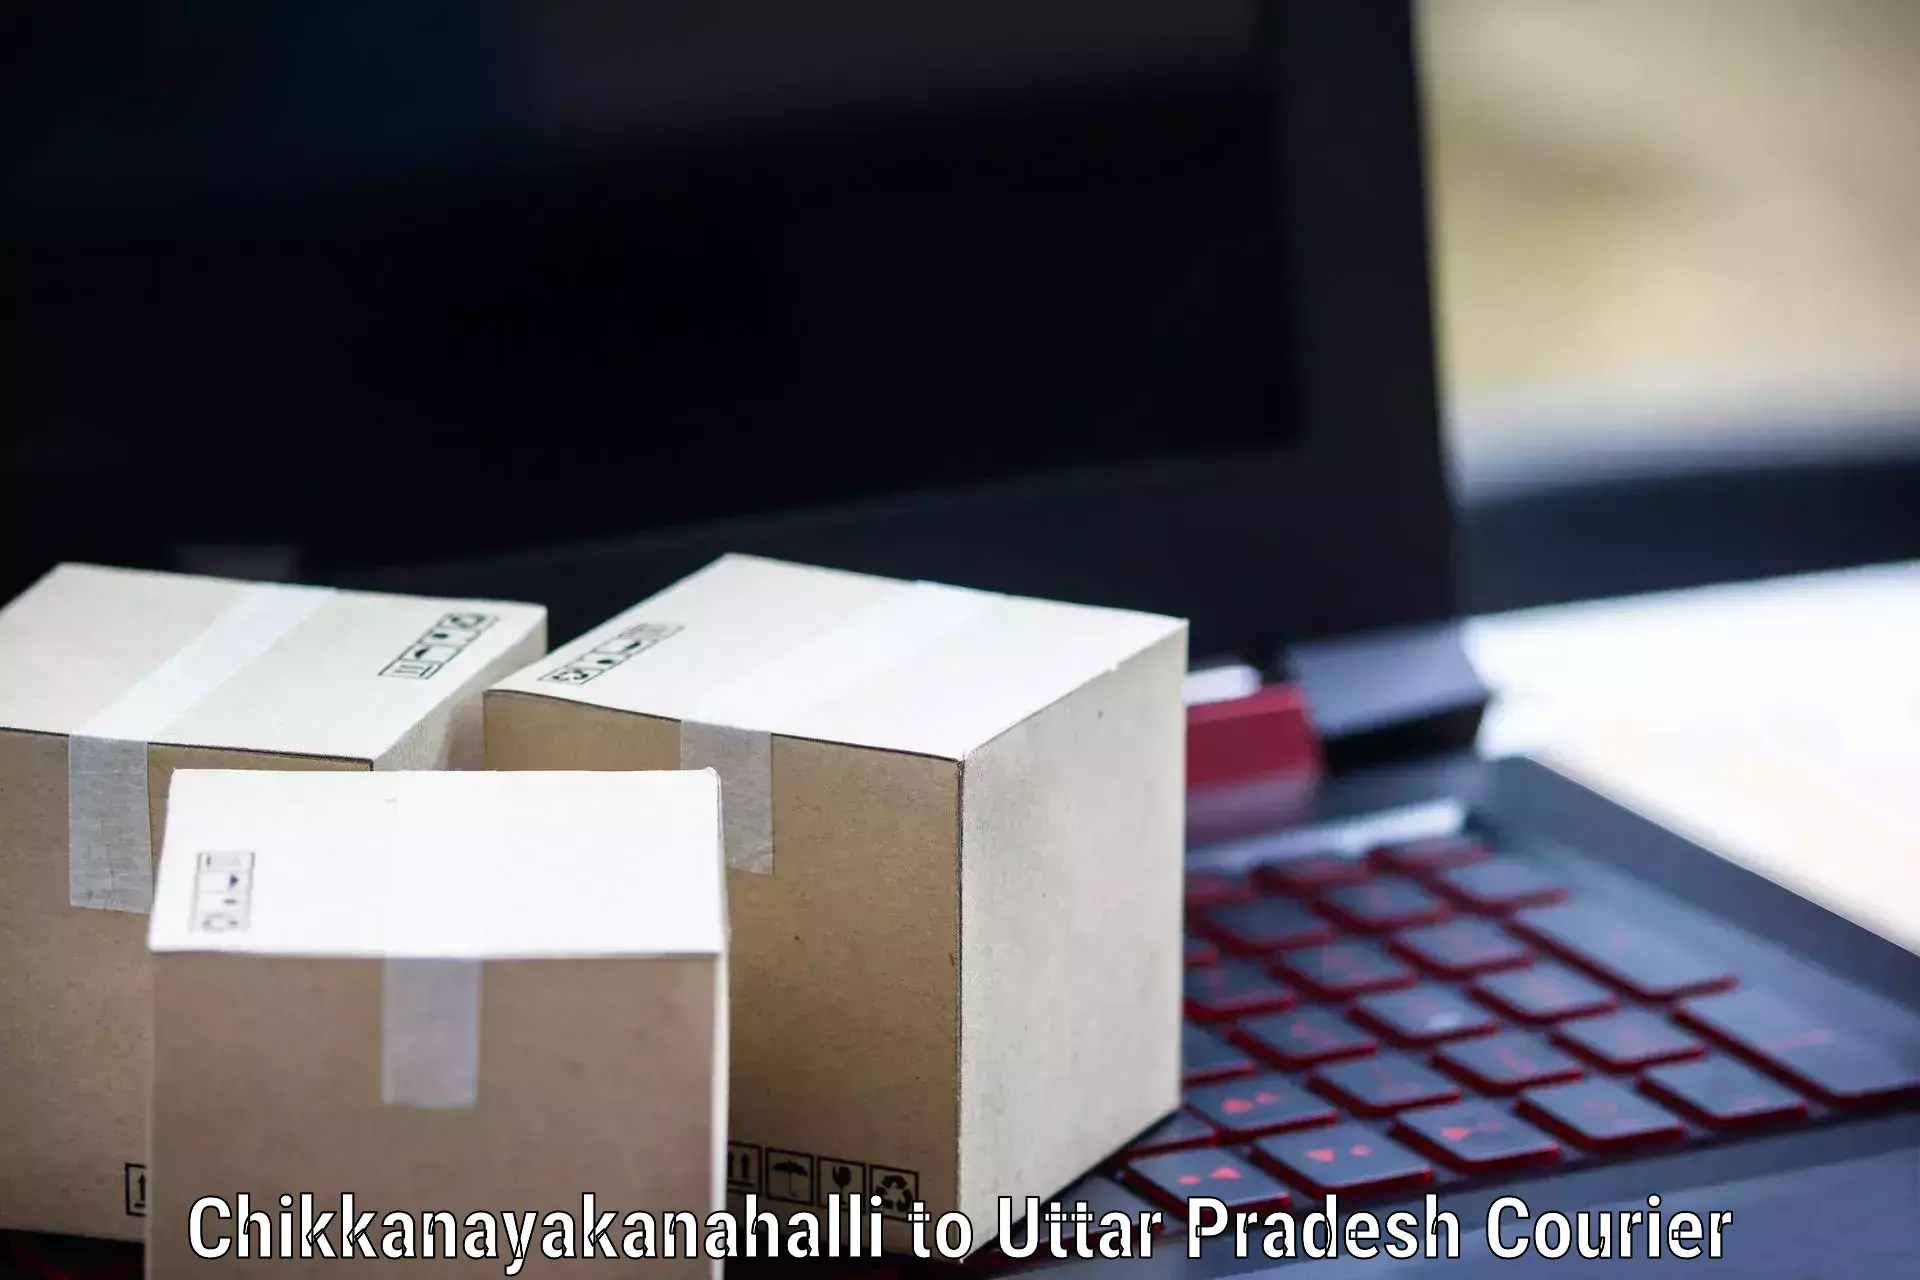 Package consolidation Chikkanayakanahalli to Daurala